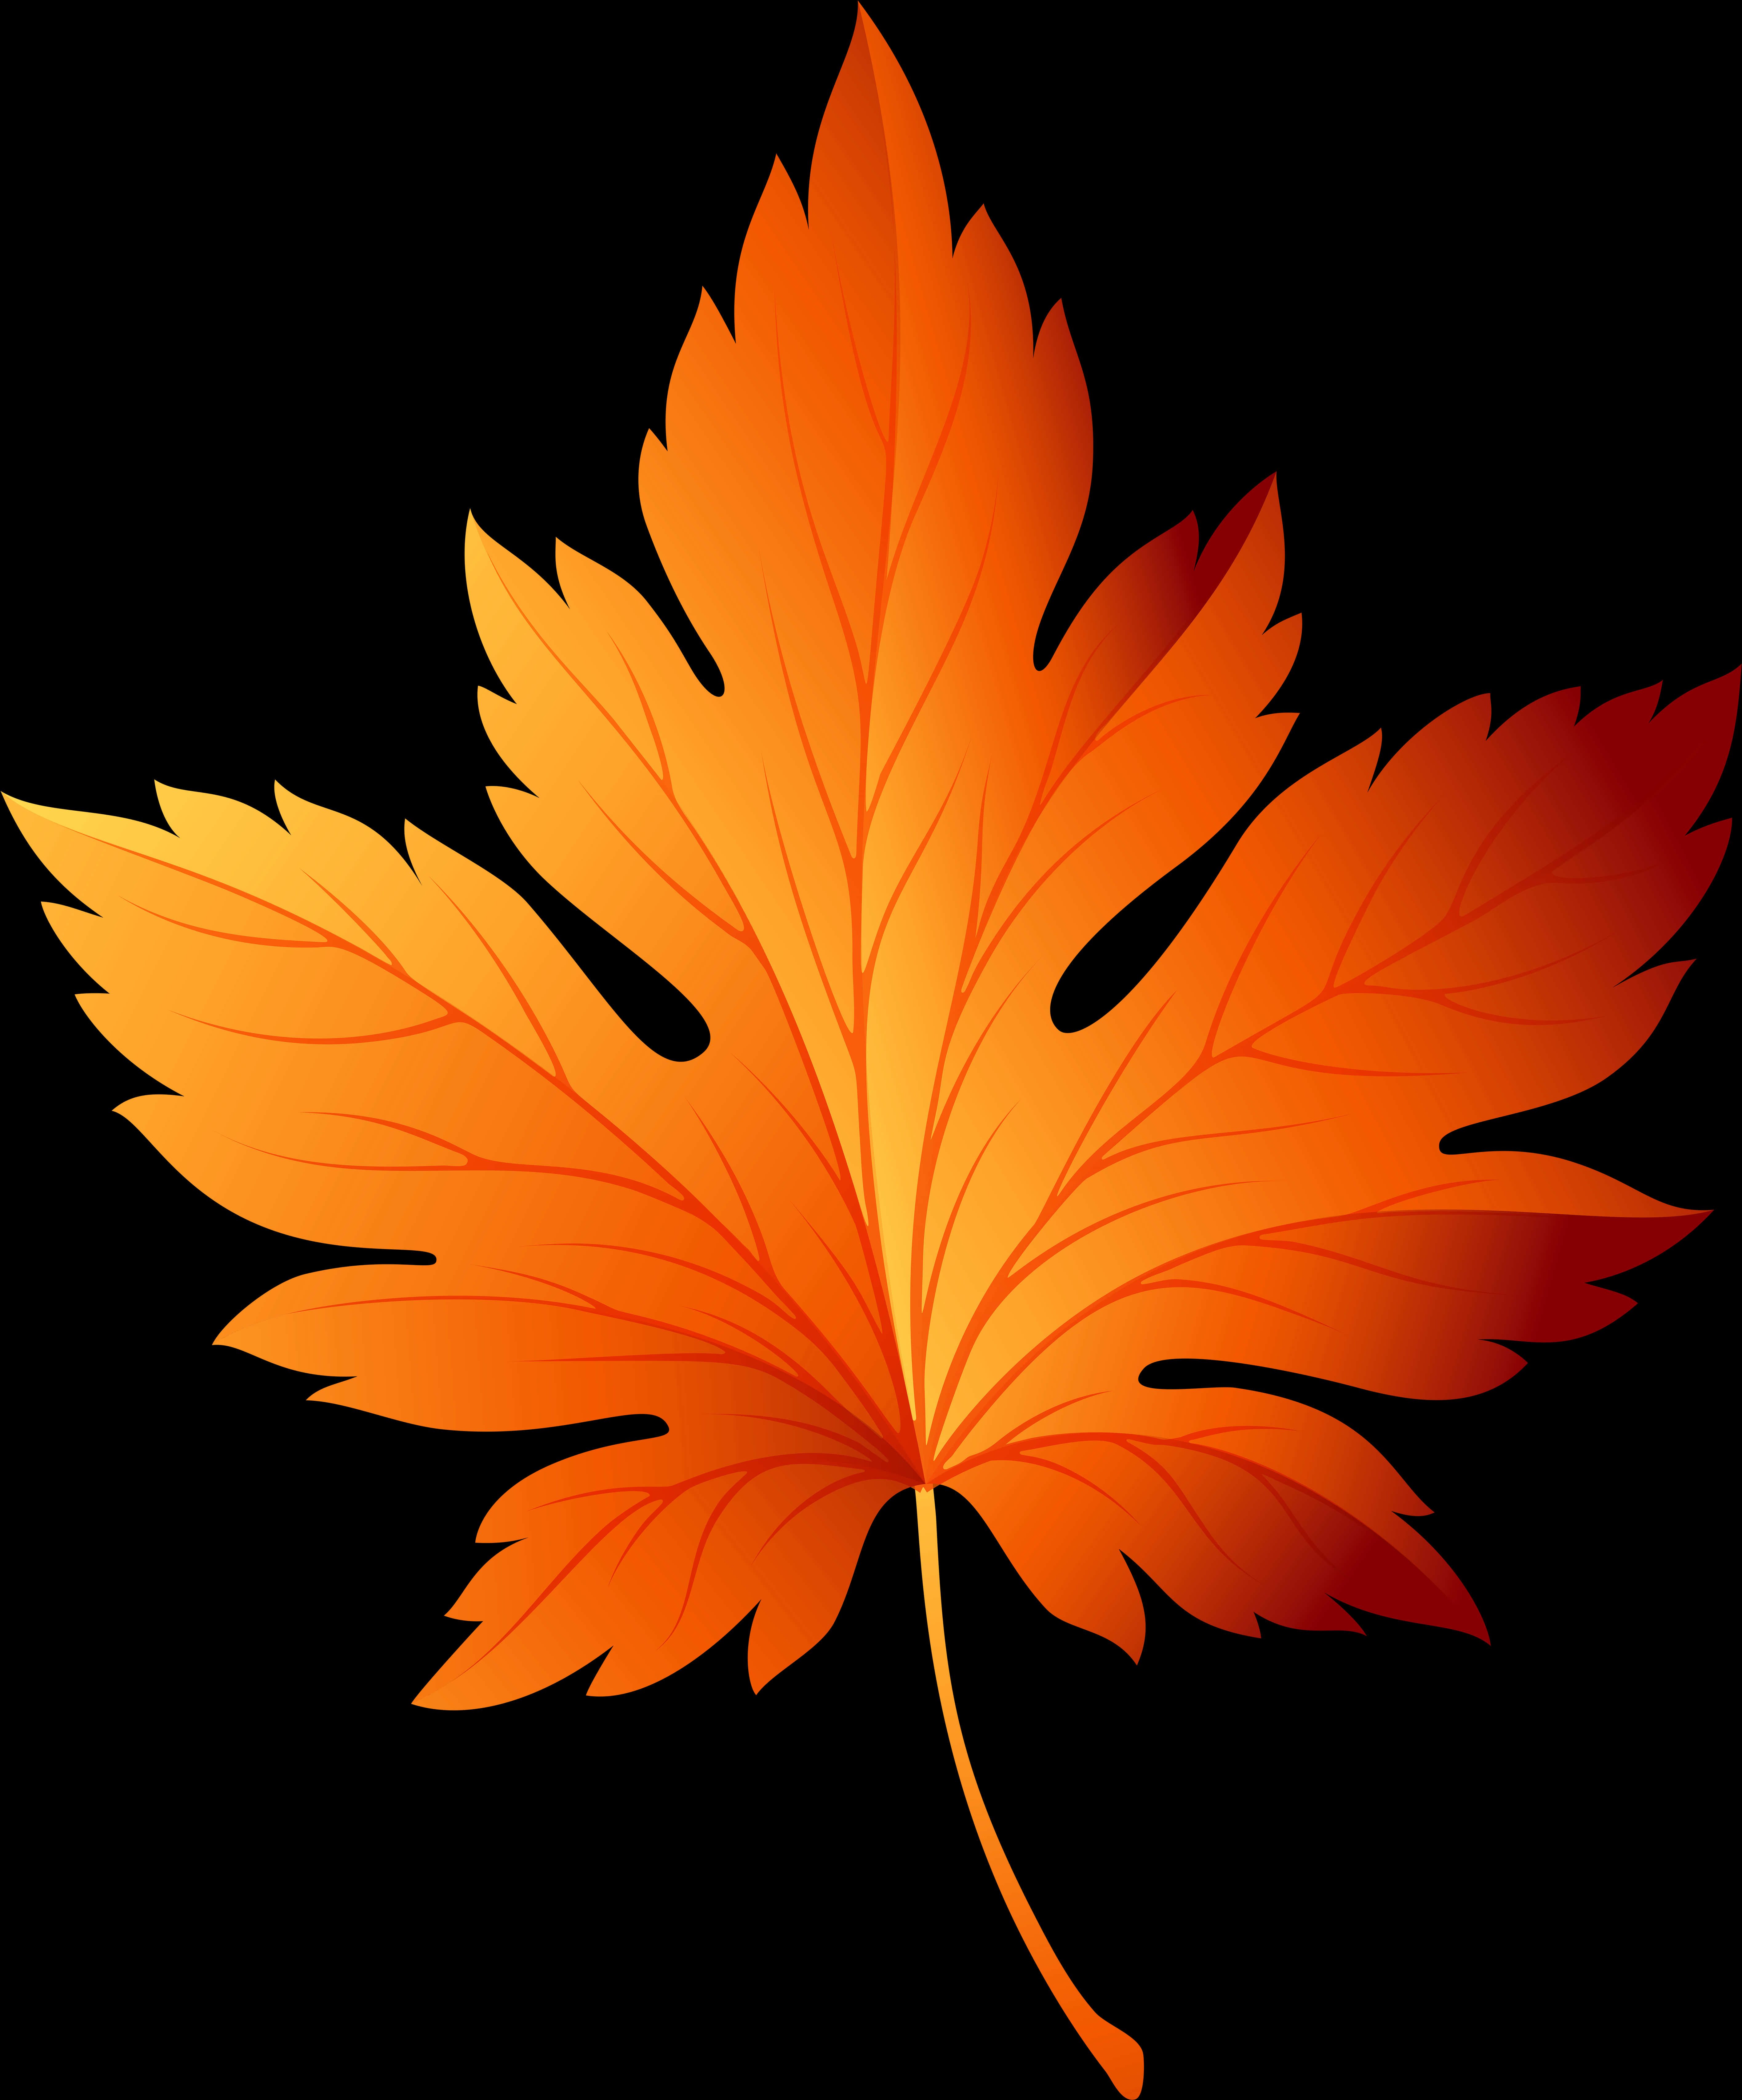 Vibrant Autumn Leaf Graphic